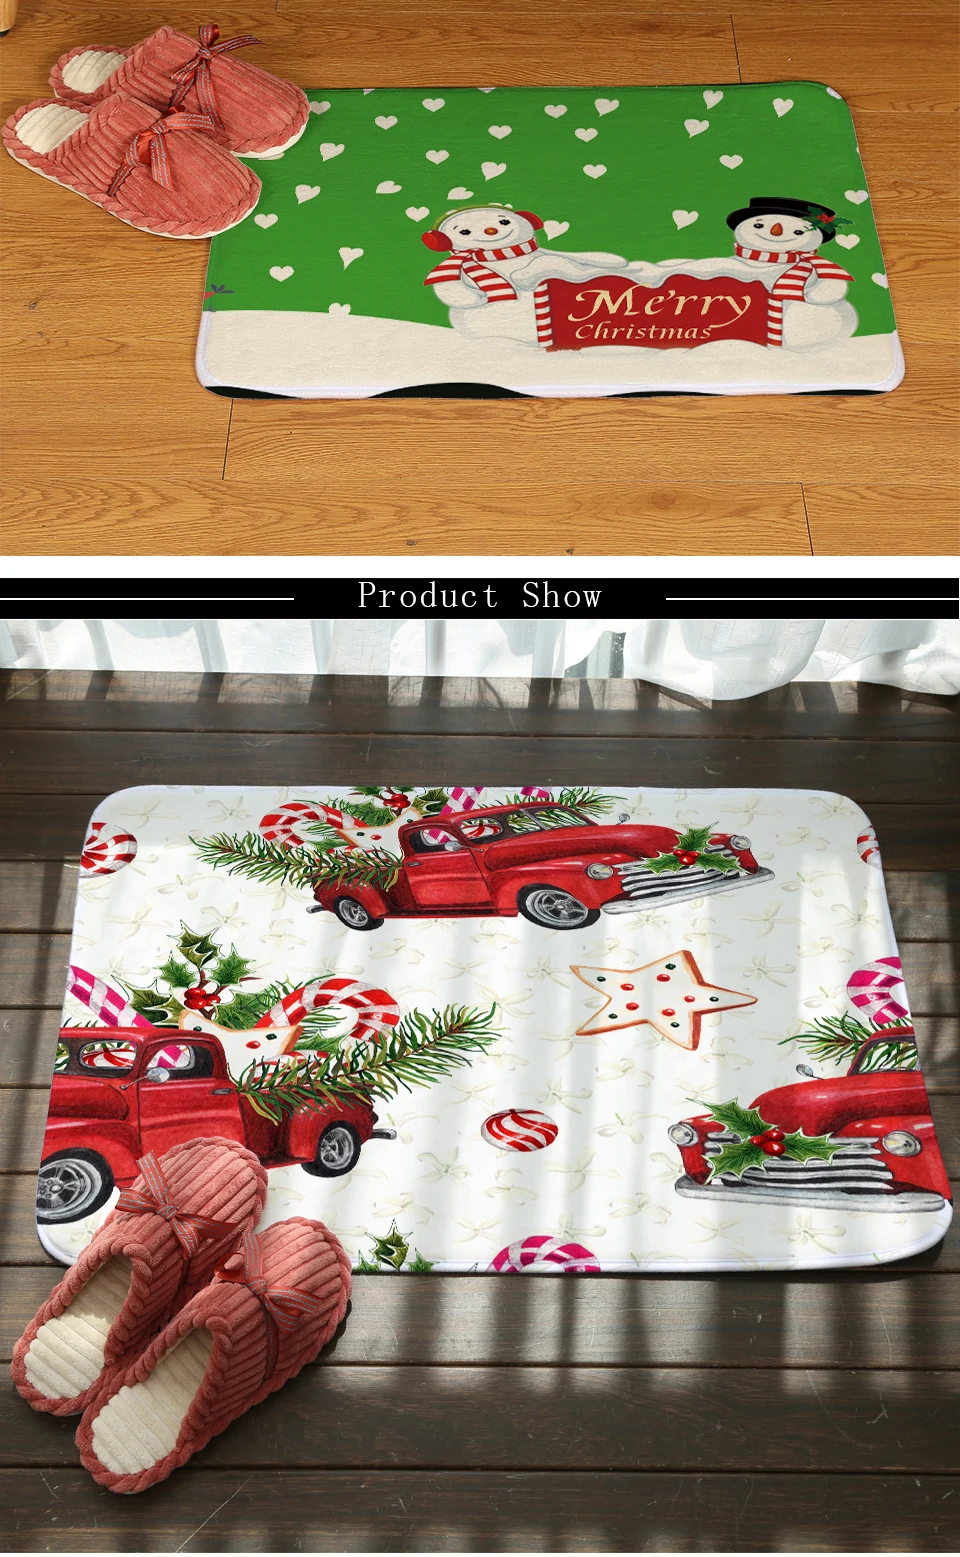 Miracille Рождественский дверной коврик с принтом Санты, коврик для ванной, коврик для туалета, домашний декор, кухонный коврик, забавные напольные коврики для улицы